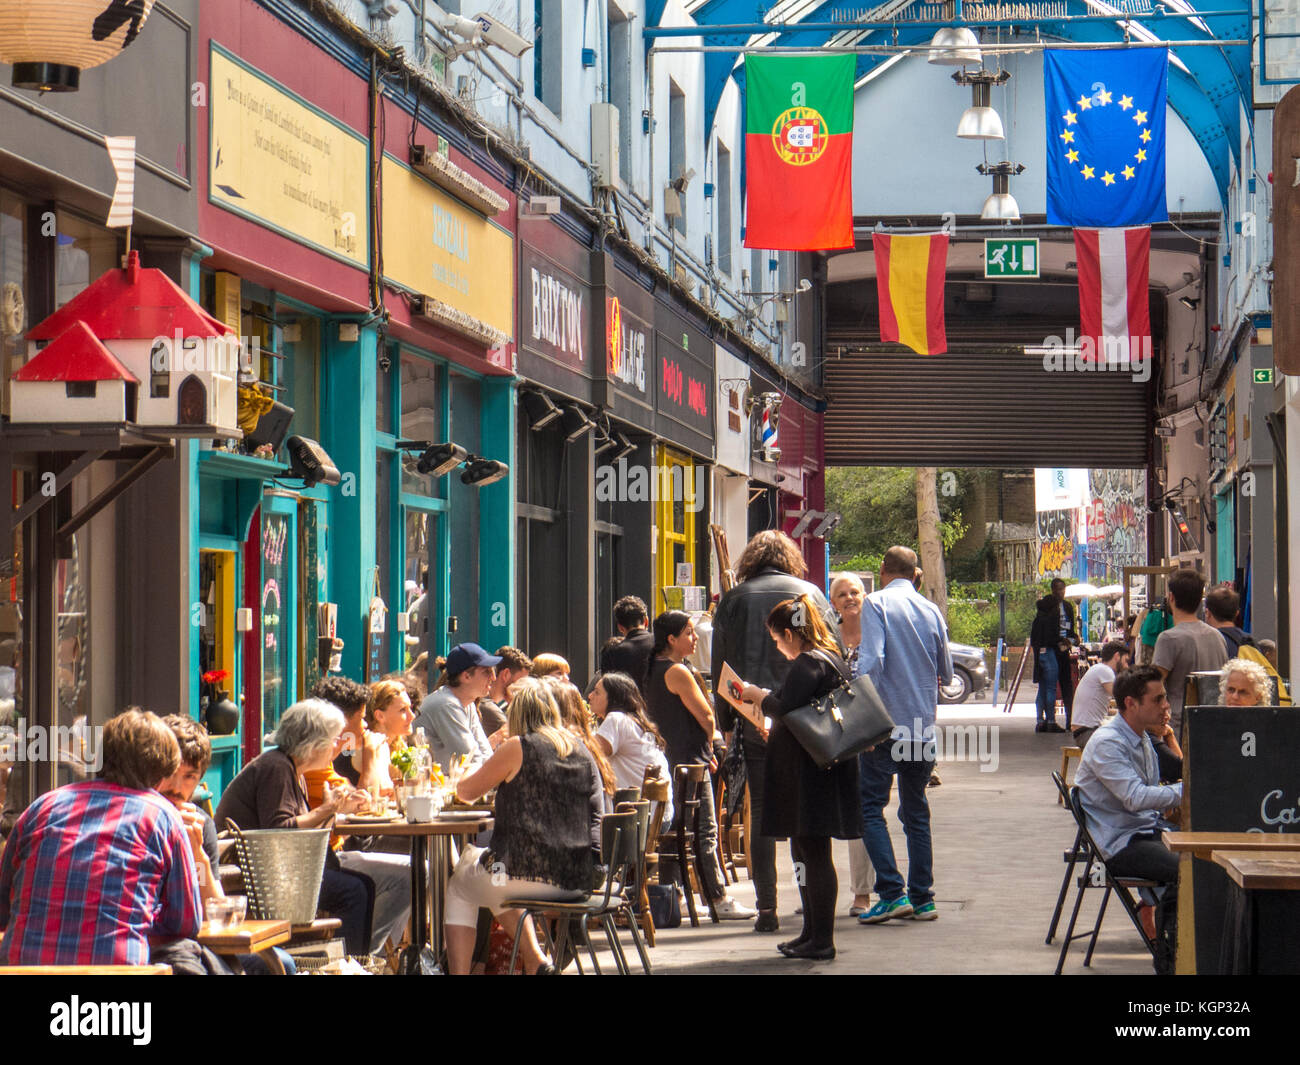 Menschen, die in Restaurants im Brixton Village in Brixton essen - einer der lebendigsten und multikulturellsten Gegenden Londons Stockfoto